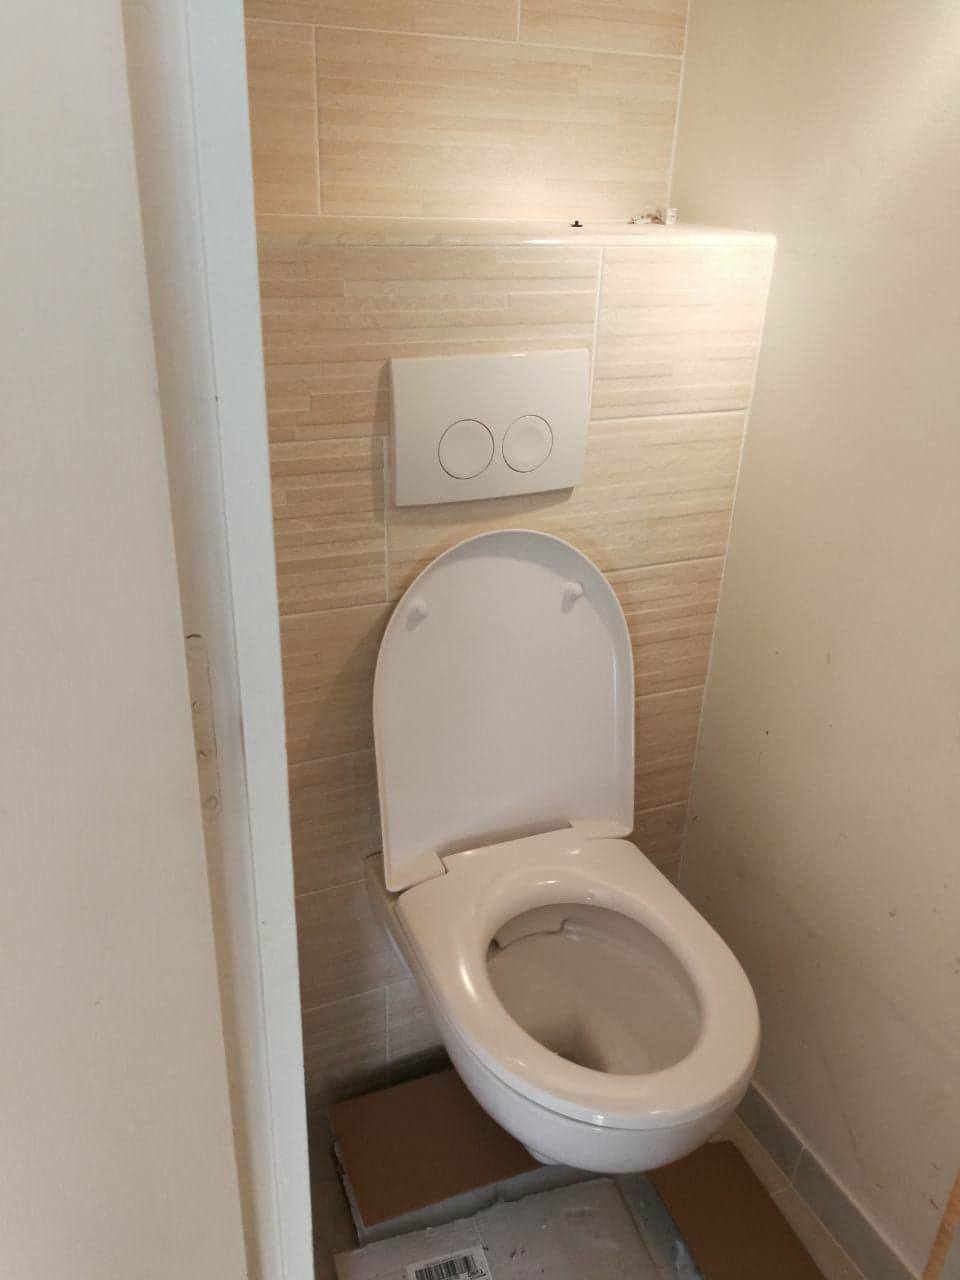 maghawry_renovation_travaux_2018_peinture_murs_wc_cuisine_escalier_toilette_carrelage_faux_plafond_cloisons_bandes_enduit_cheminee_toilette2-min